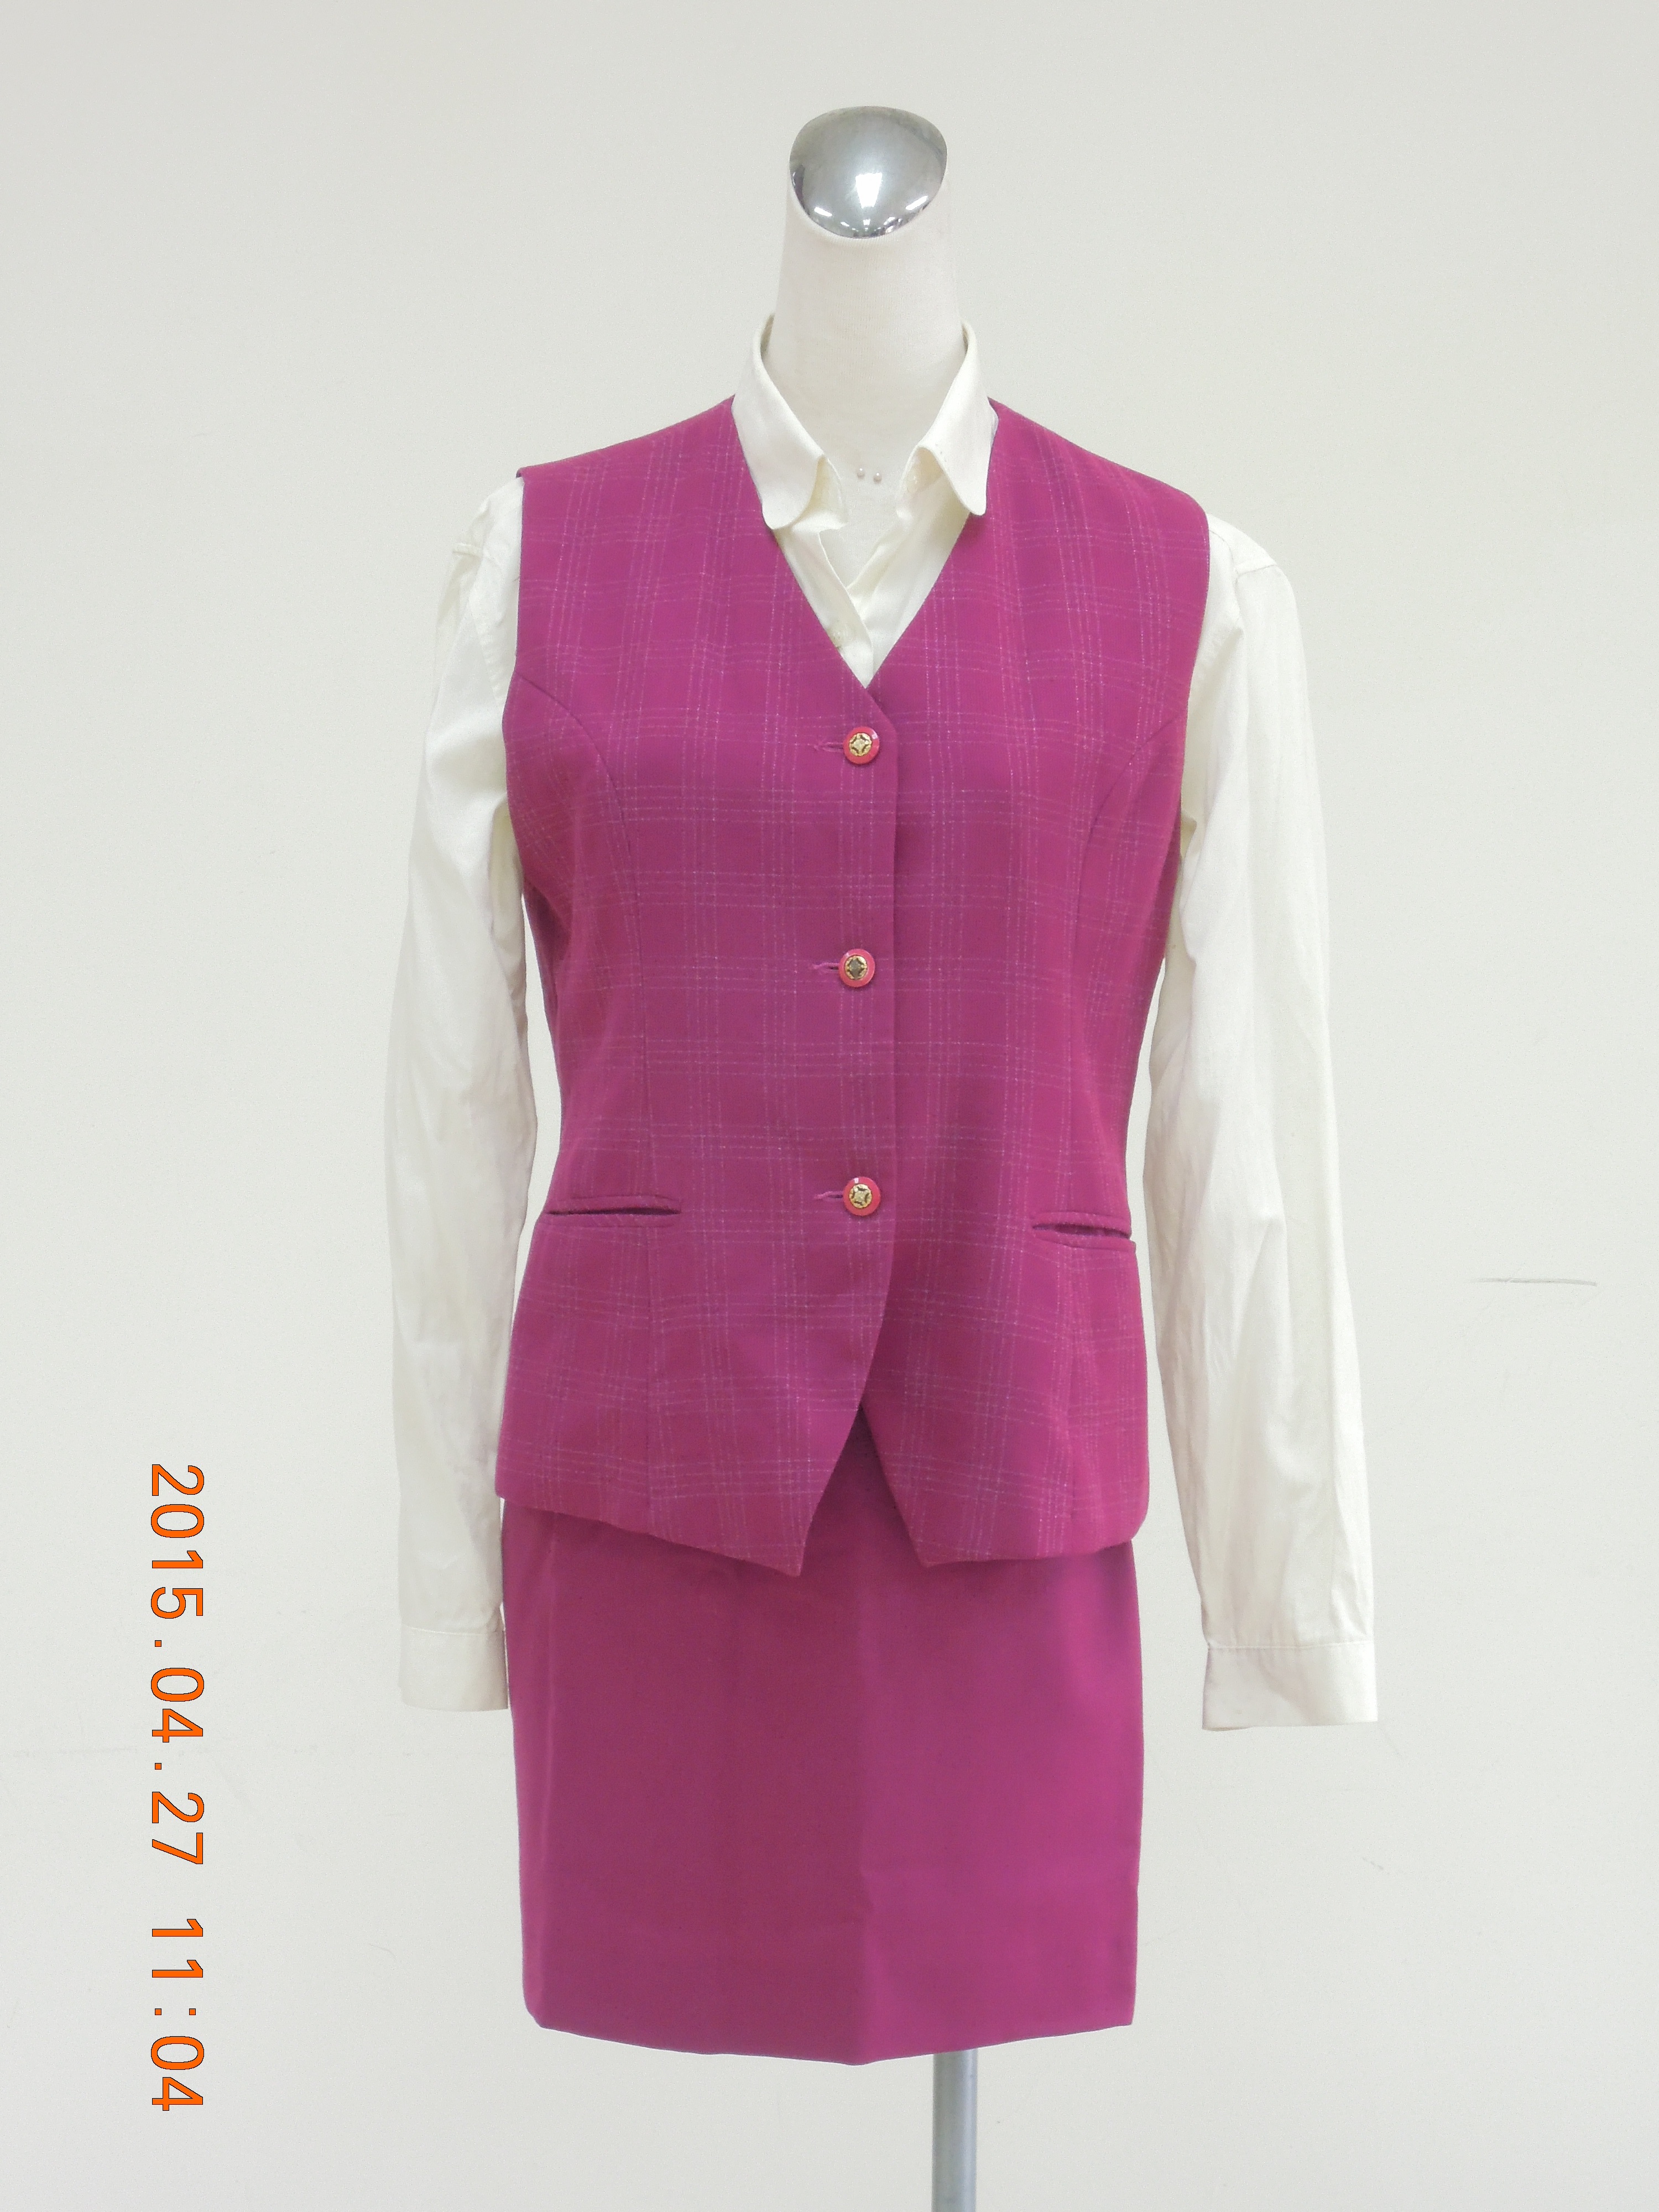 收費員制服之80至89年代冬季紫紅色套裝1